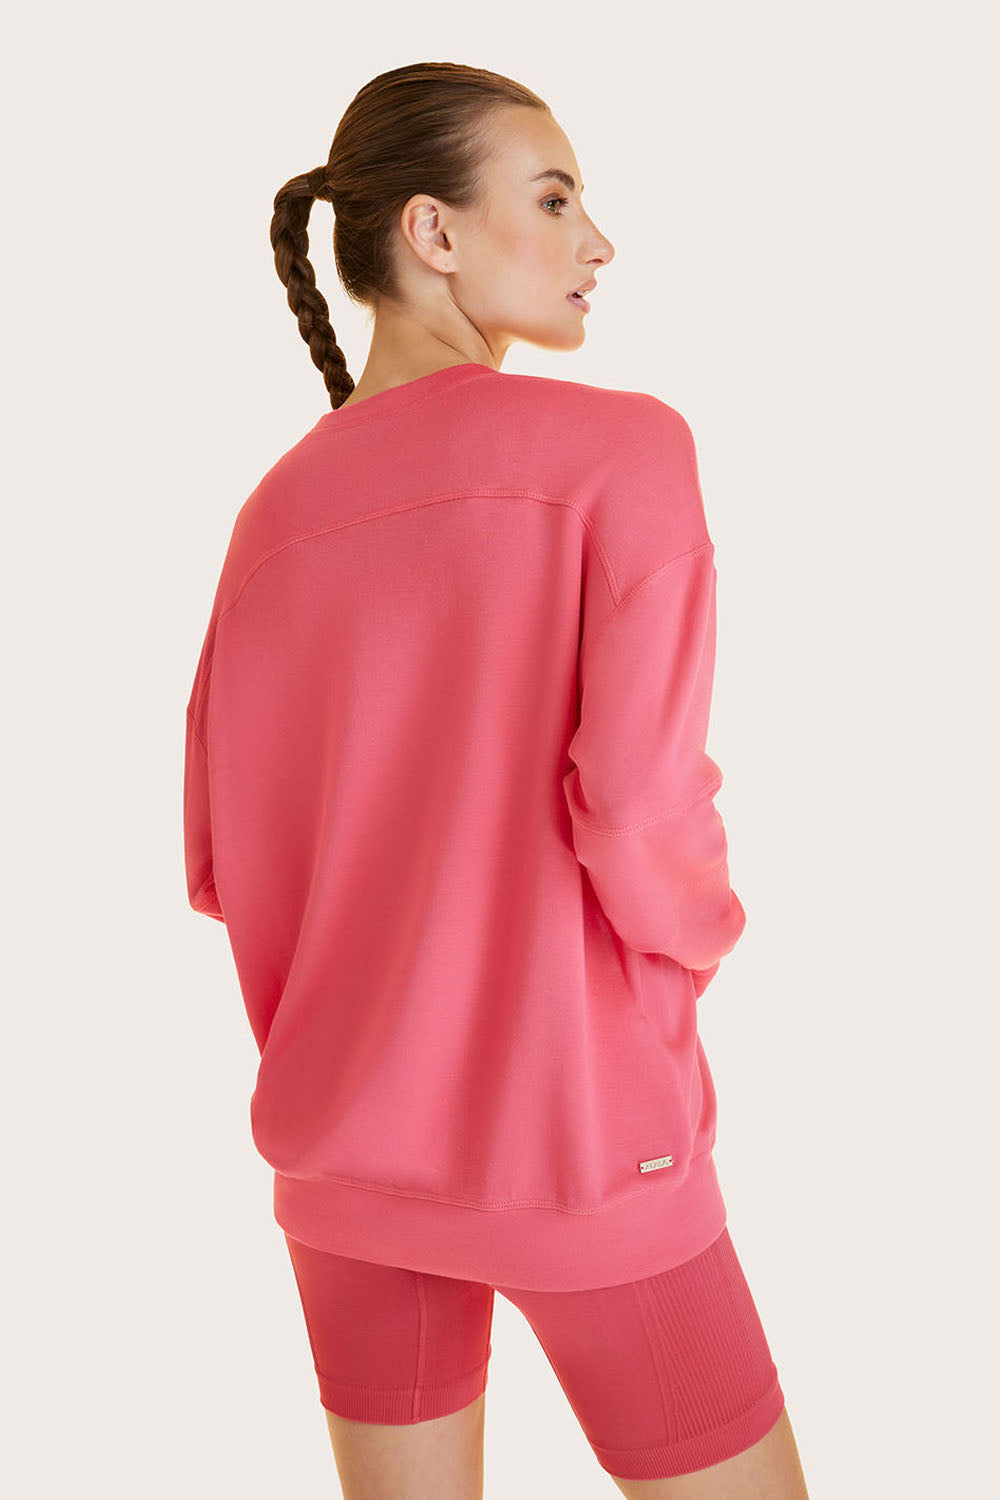 Alala women's Blocked Crewneck sweatshirt in pink